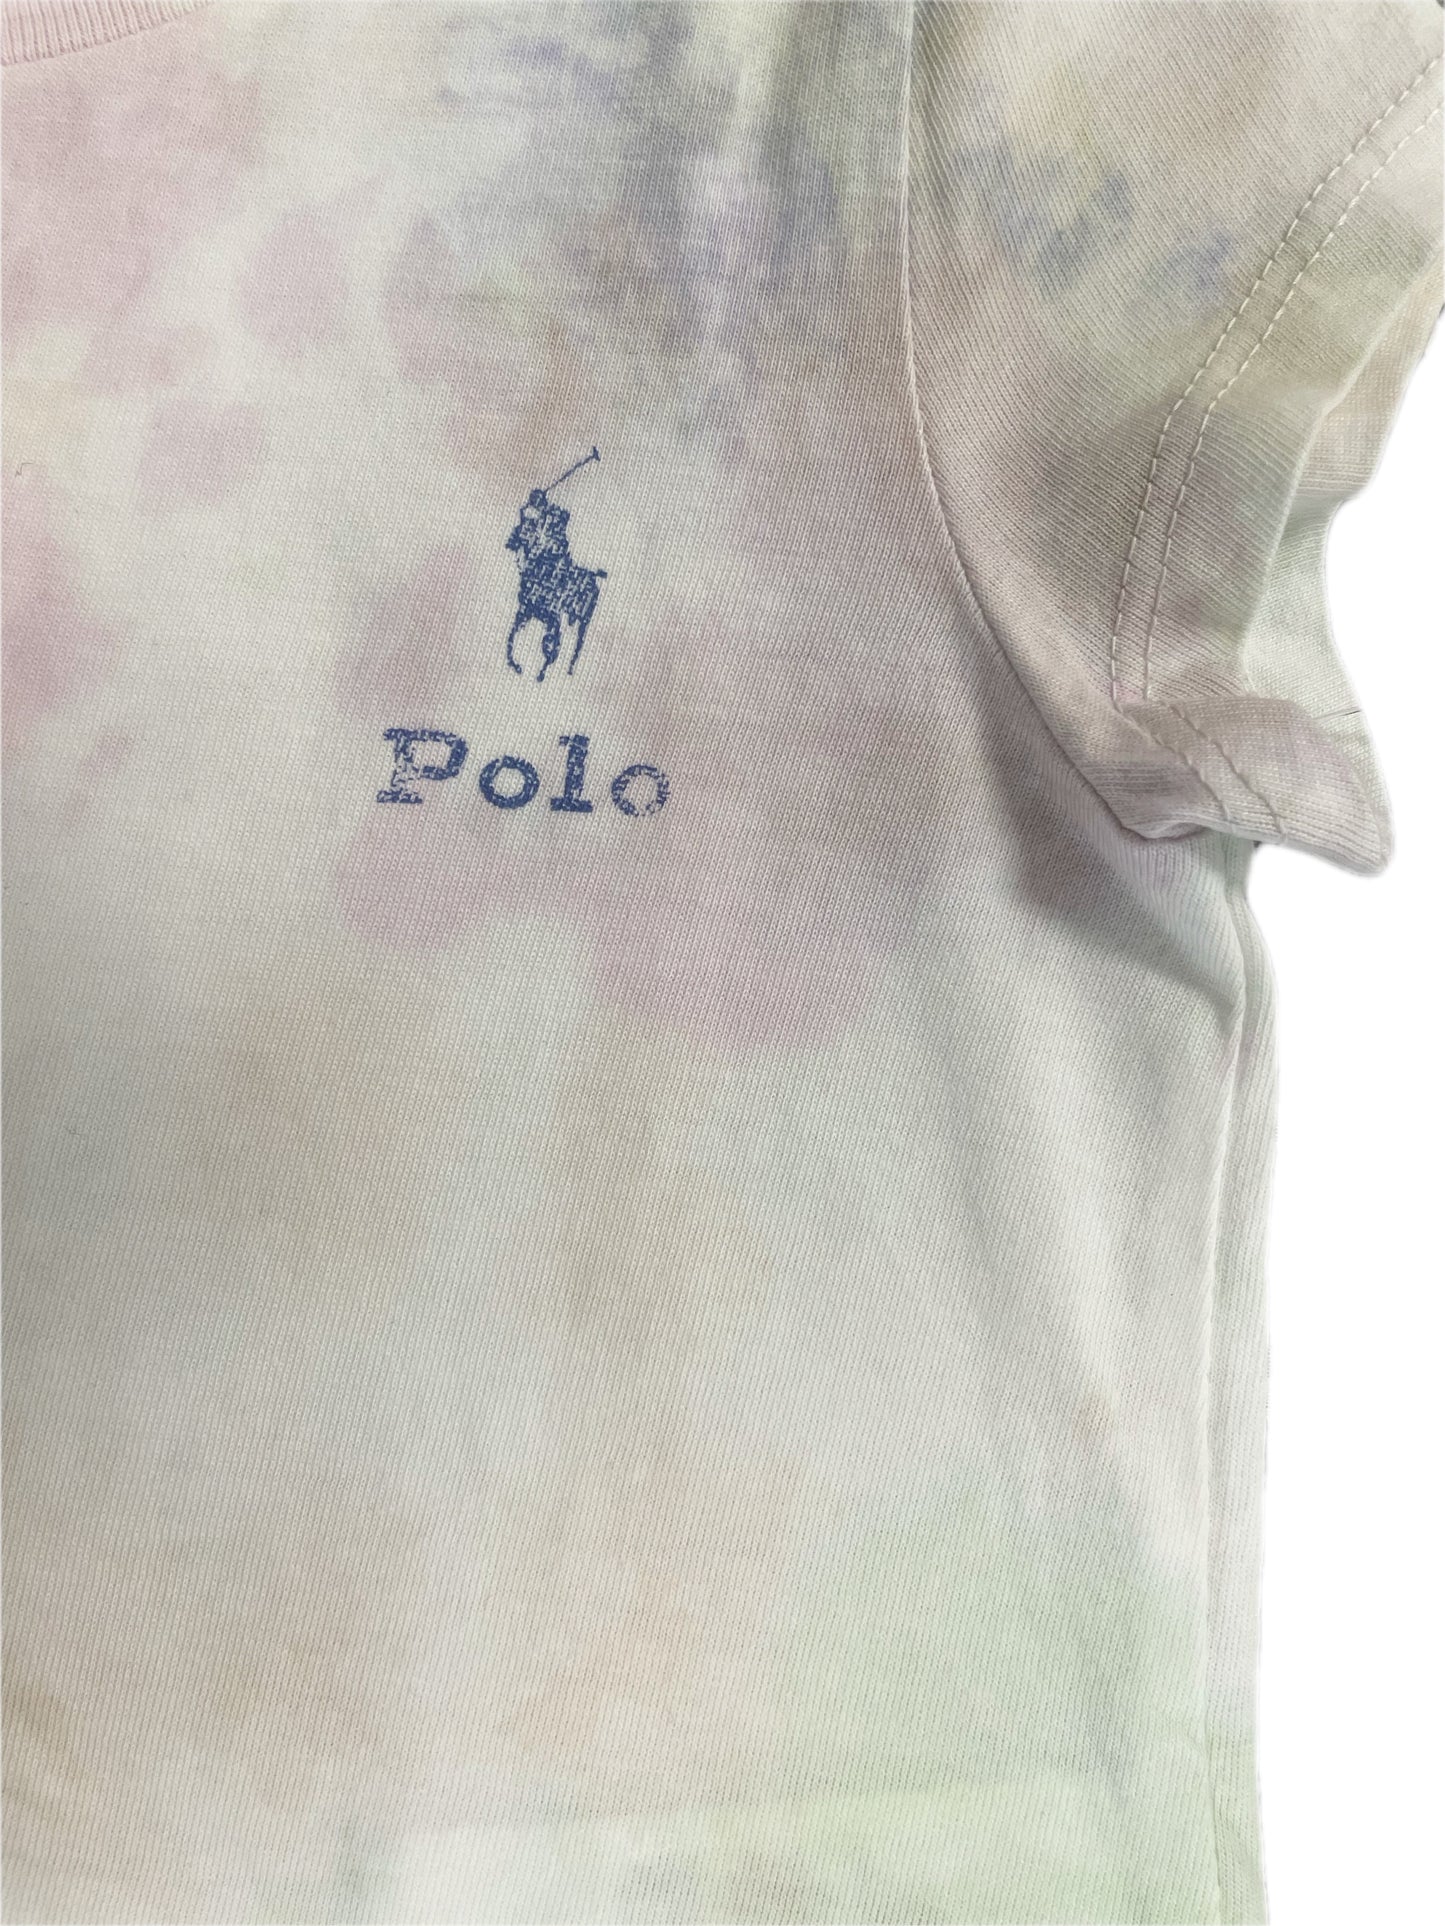 Polo Girls tie-dye tee shirt